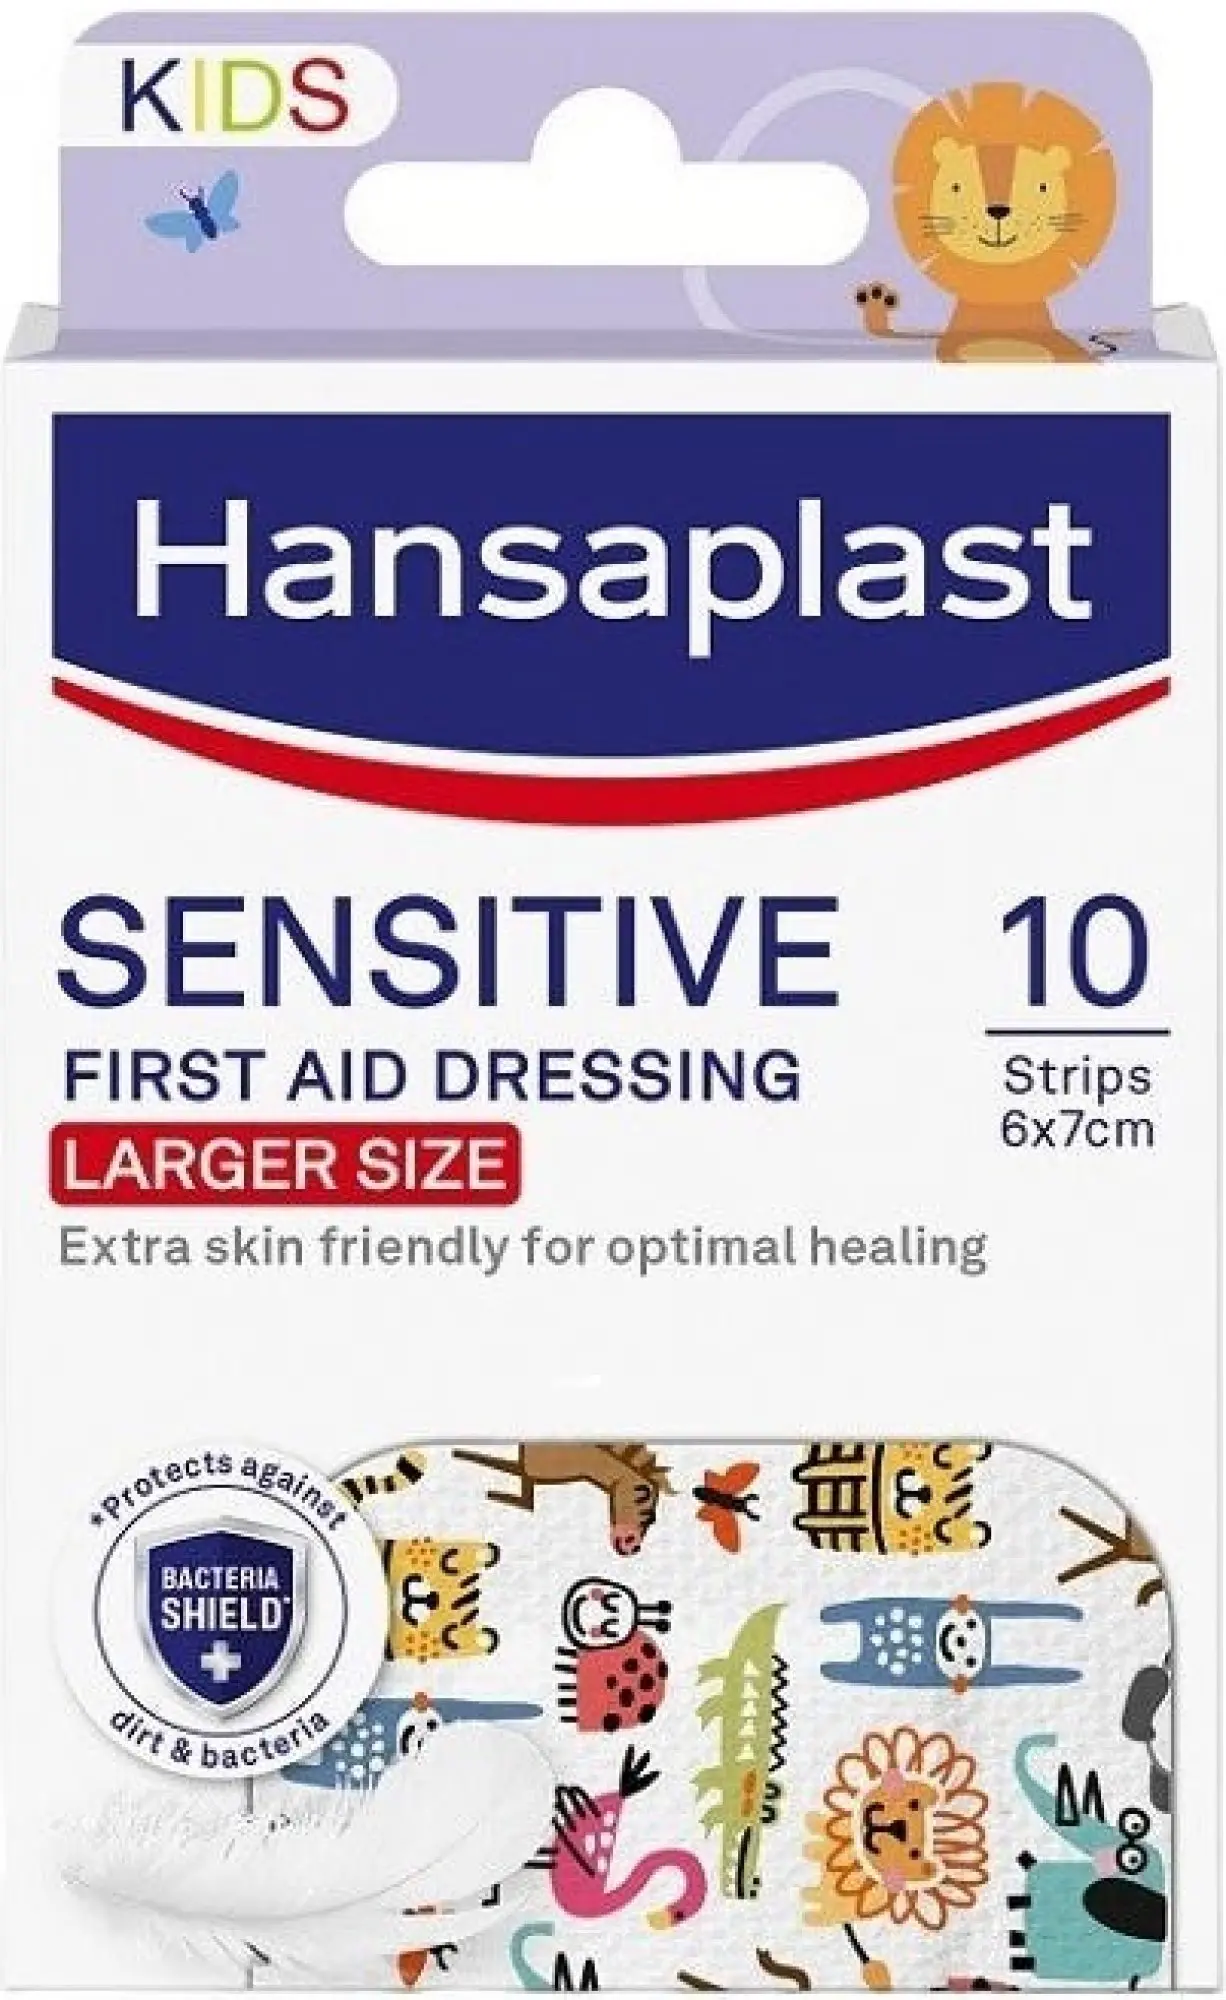 Hansaplast Sensitive Zvířátka large náplast 10 ks